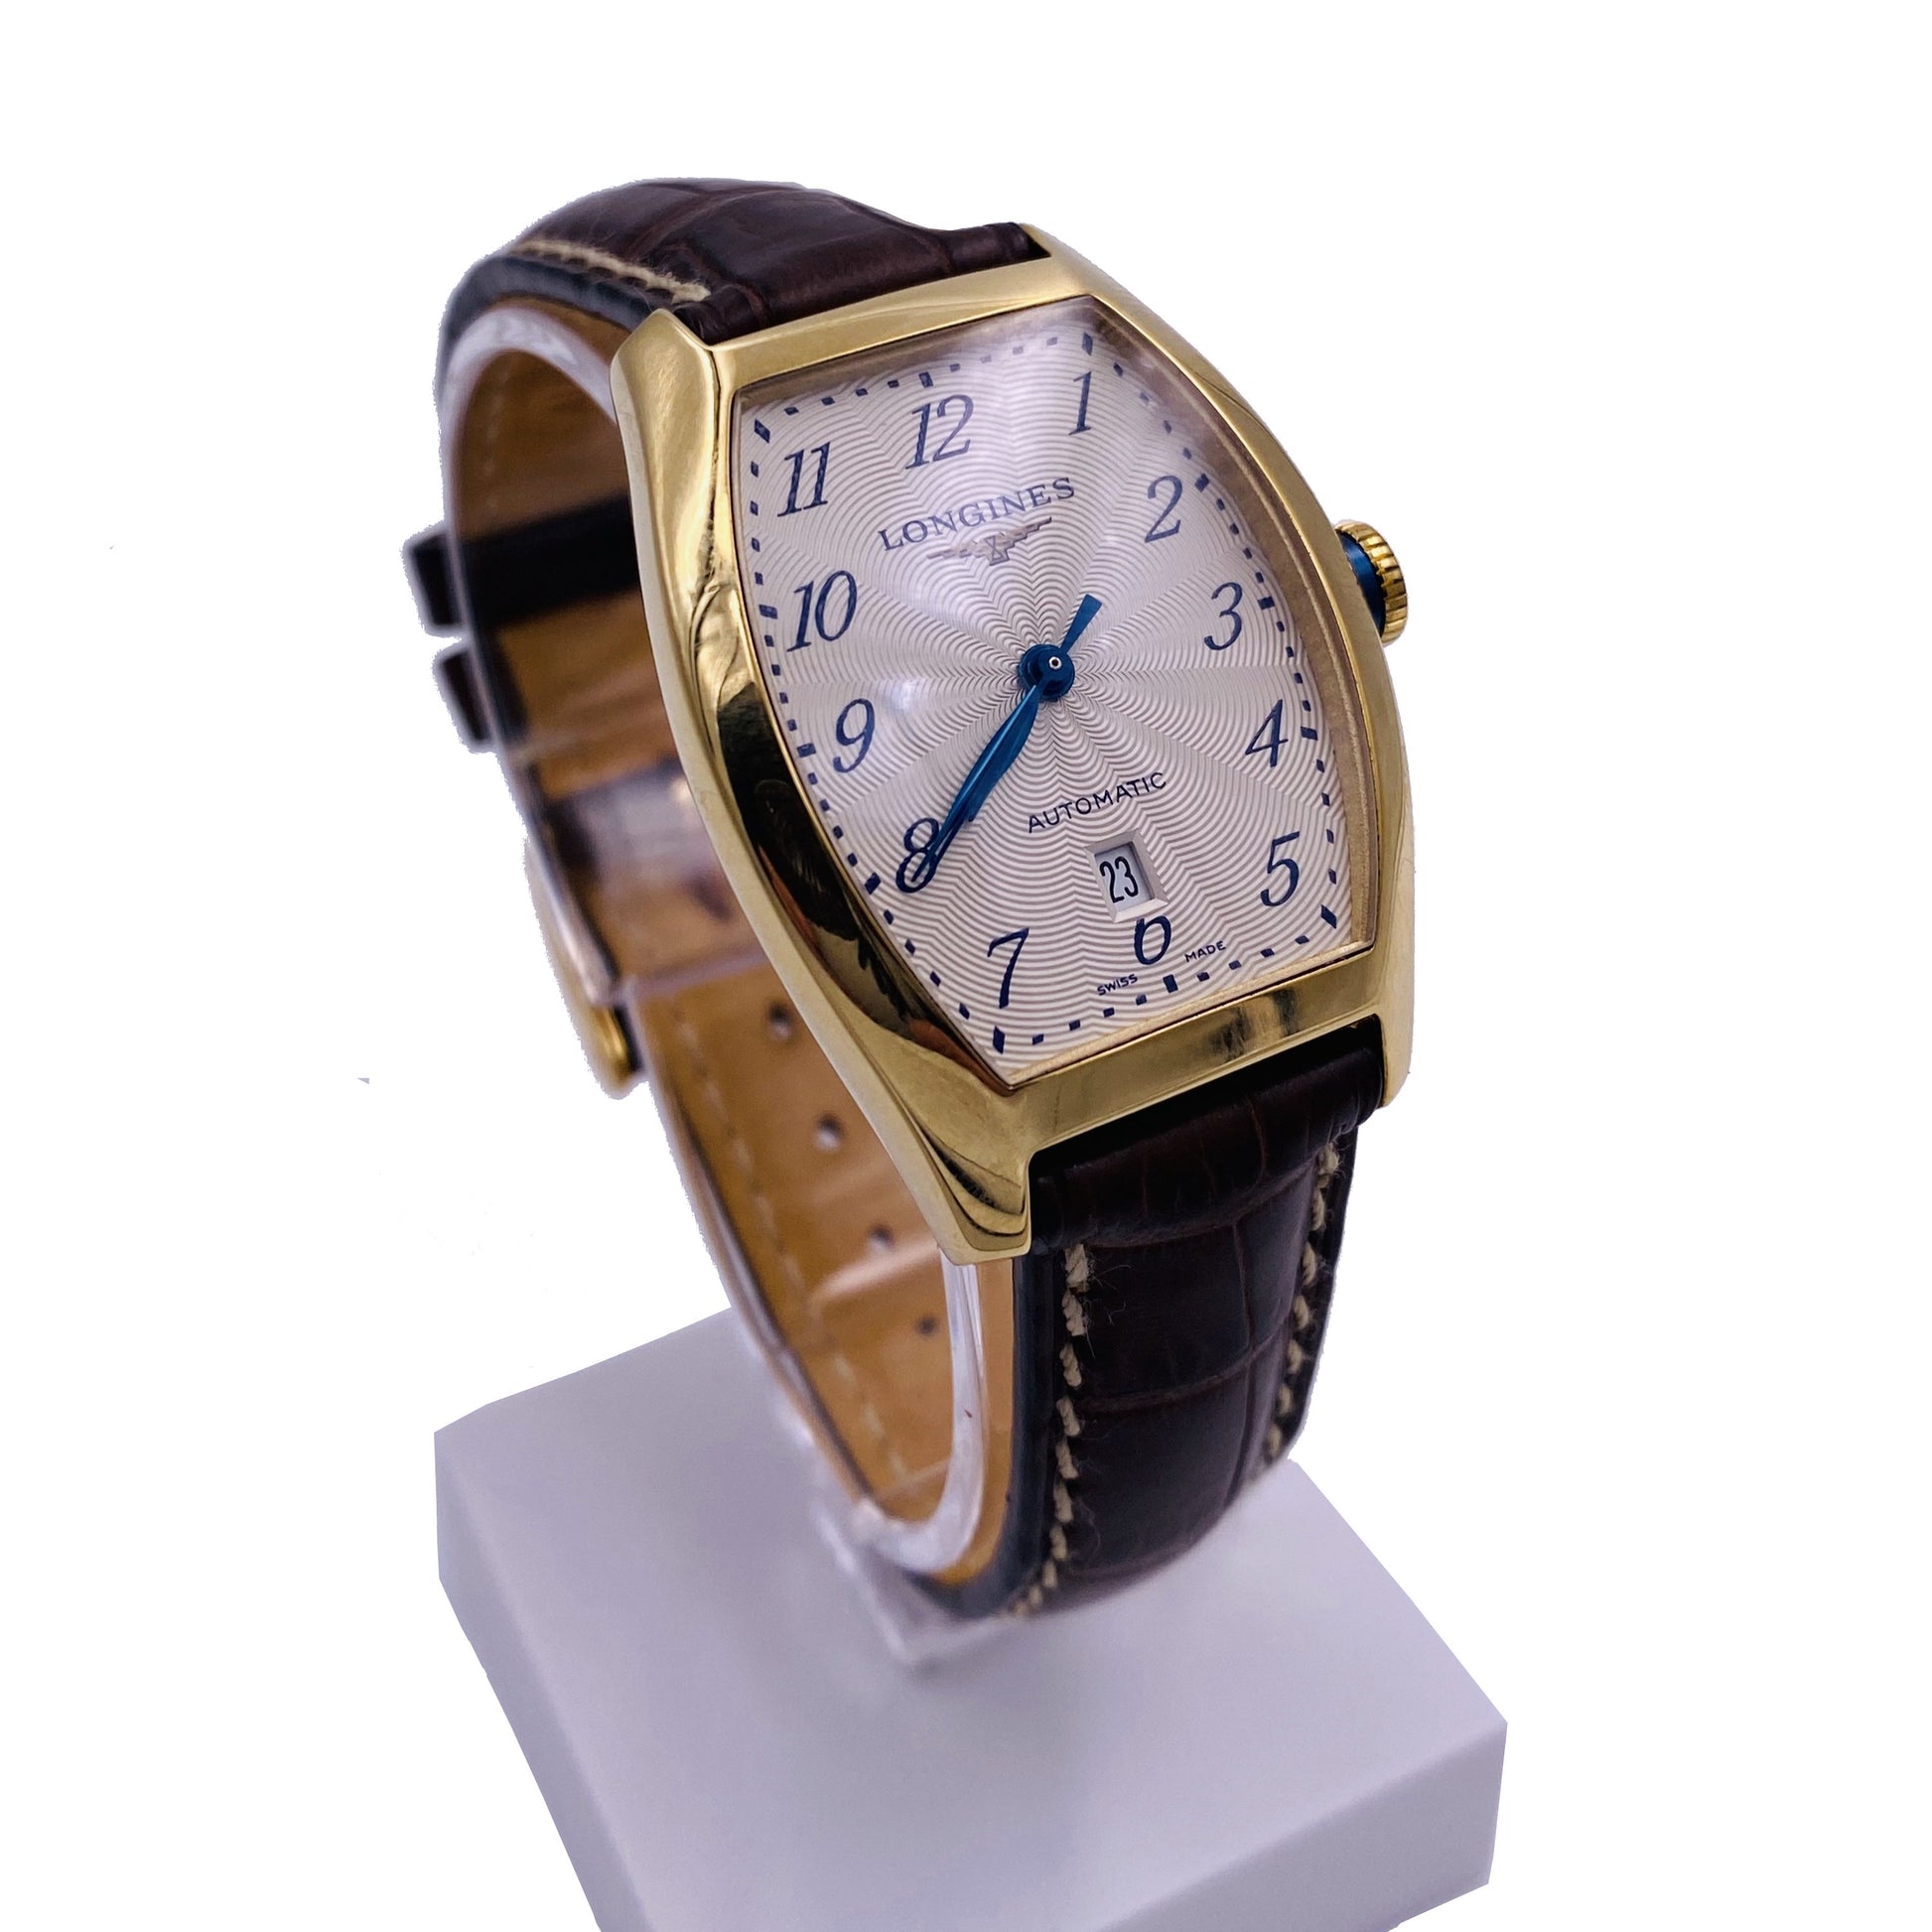 orologio donna longines rettangolare cassa oro giallo cinturino pelle con datario ore 6. Visuale di lato.